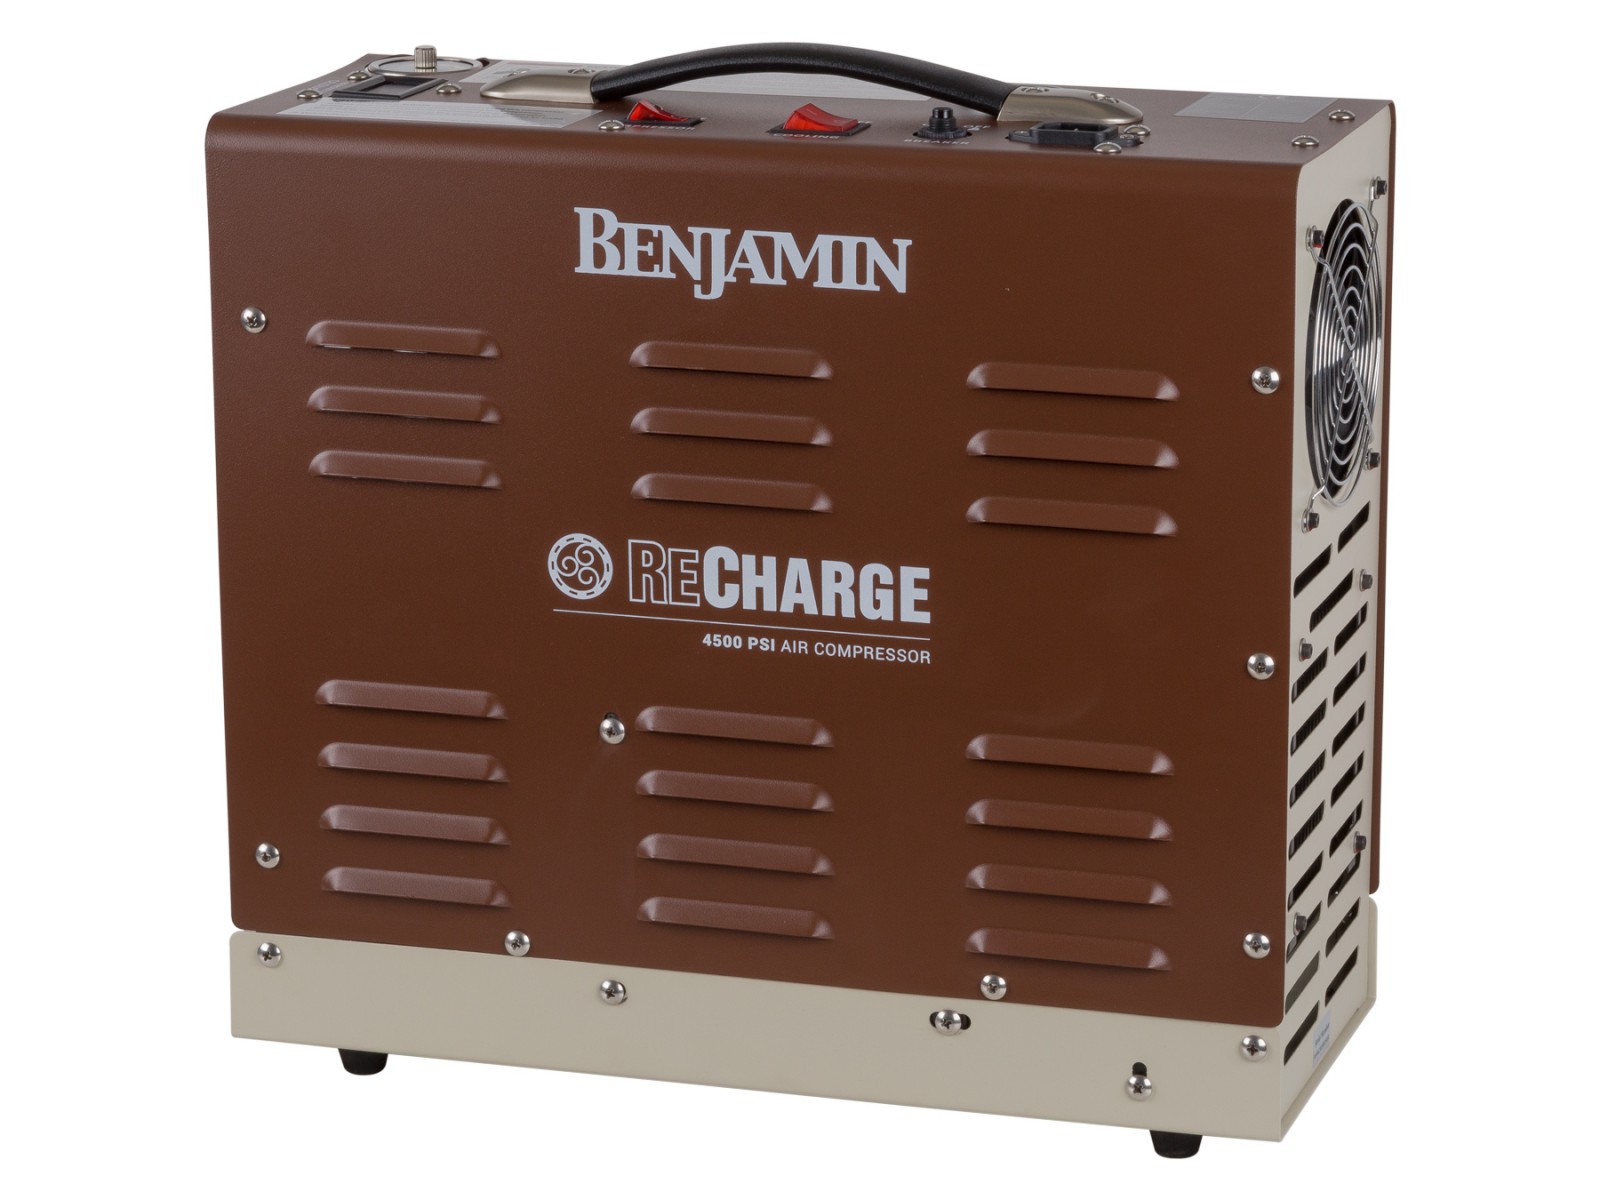 Benjamin Recharge HPA Compressor, 4500 PSI, 110V